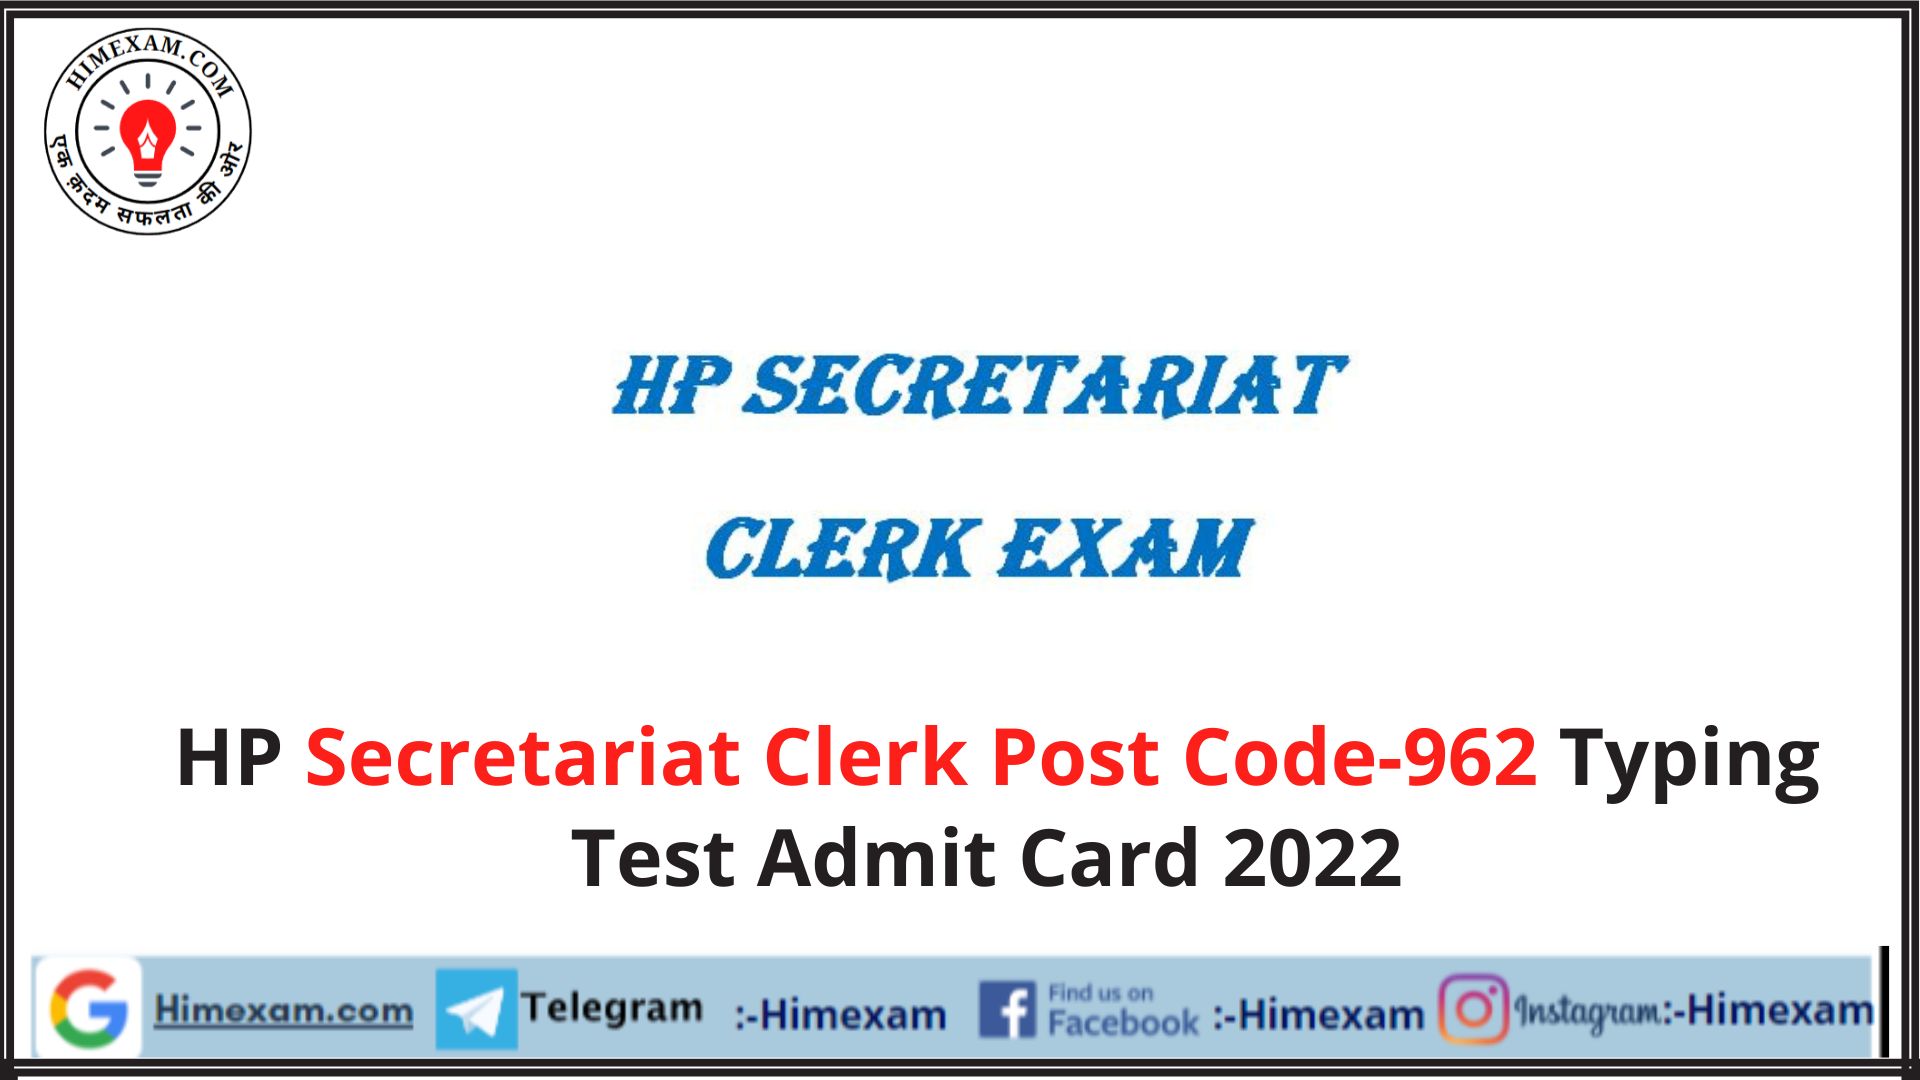 HP Secretariat Clerk Post Code-962 Typing Test Admit Card 2022